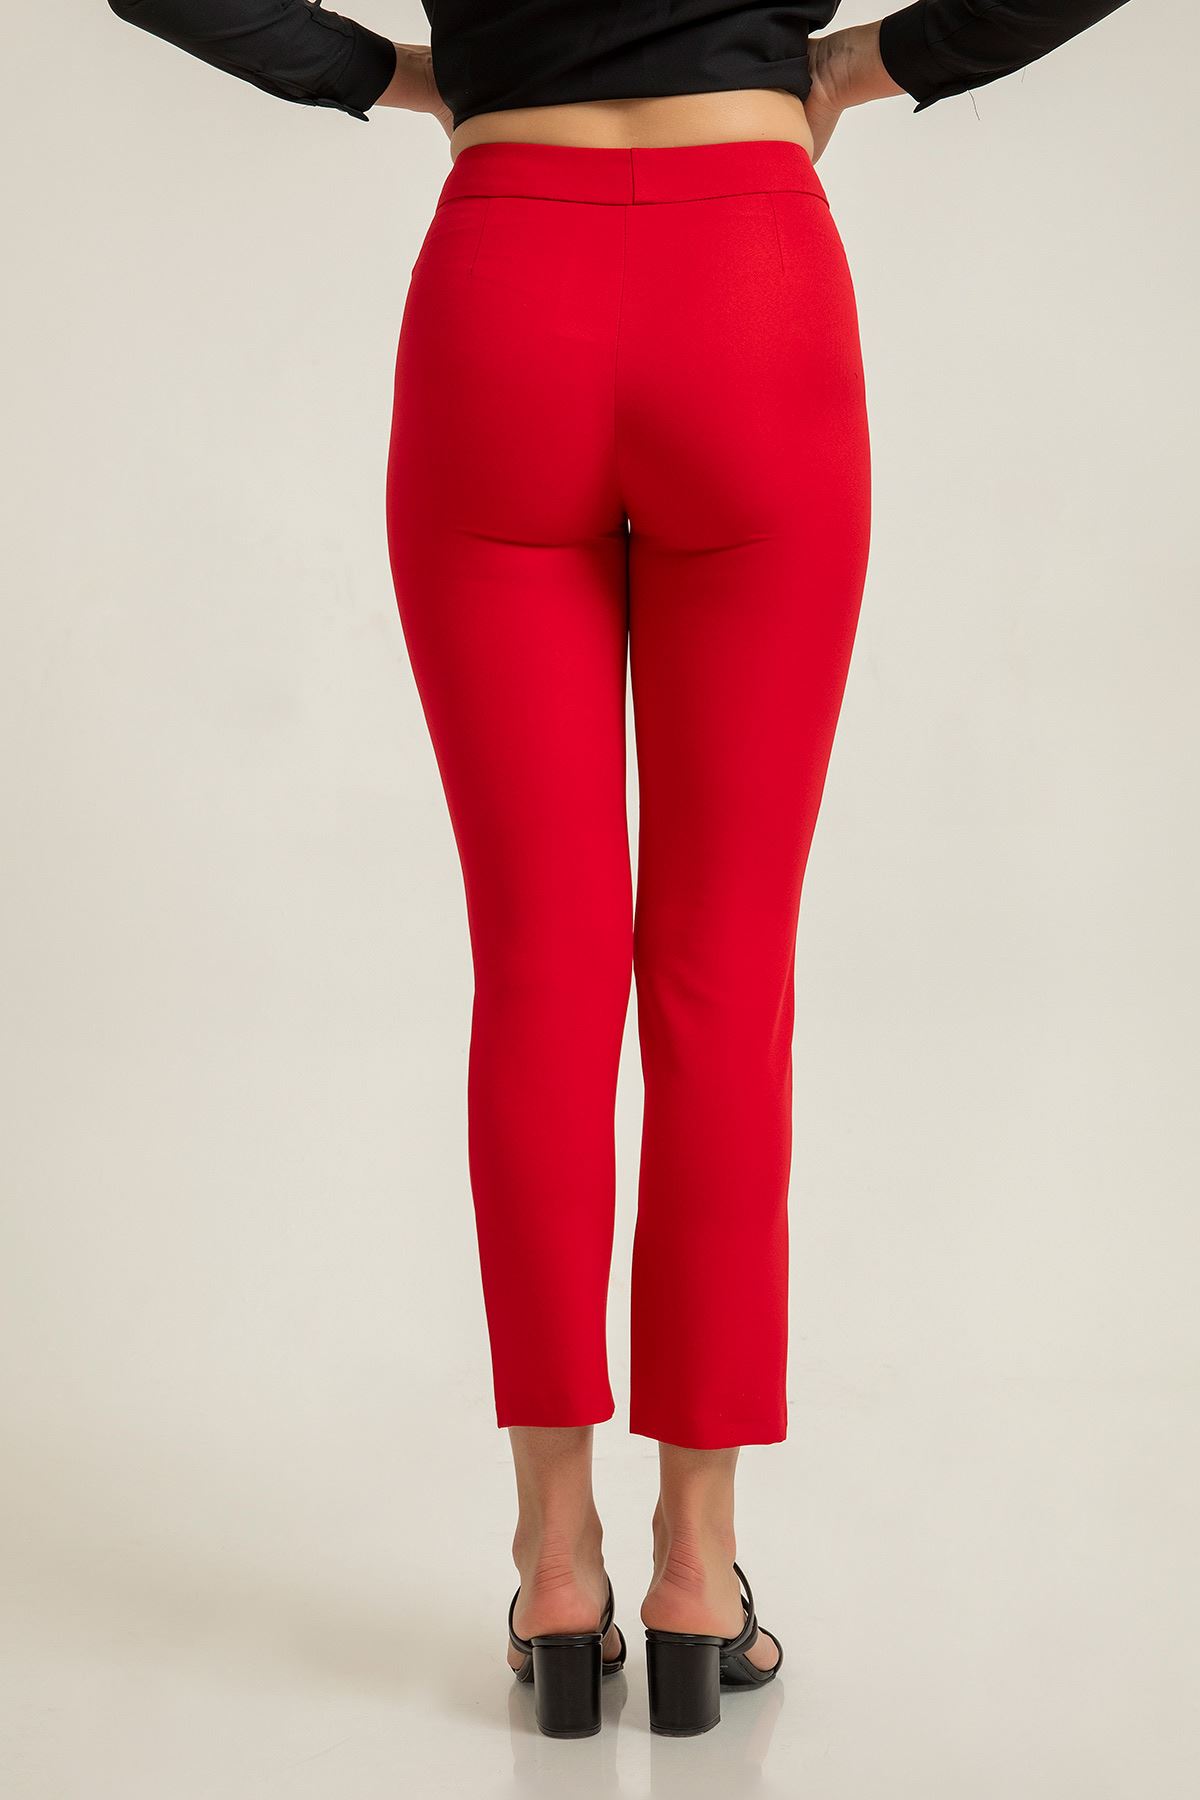 Atlas Kumaş Bilek Boy Dar Kalıp Kadın Pantolon-Kırmızı